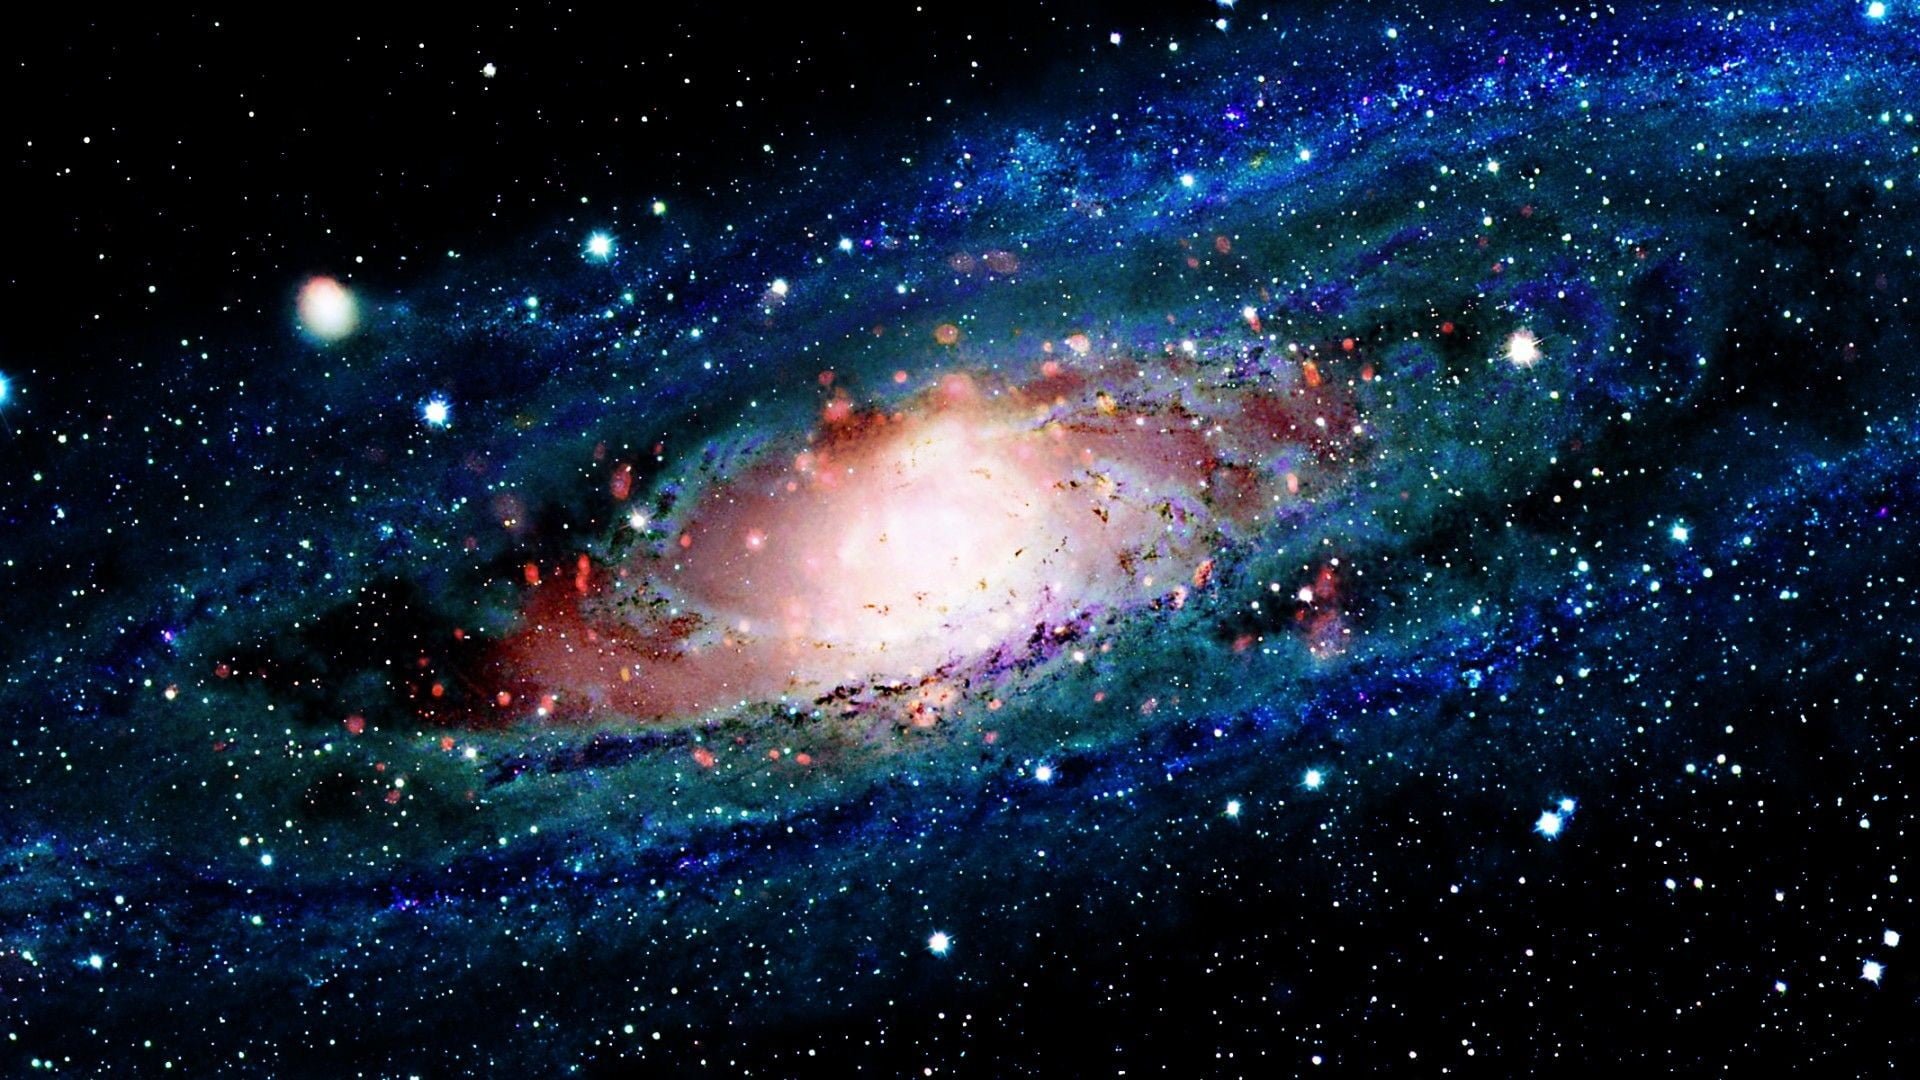 Thiên hà là một thế giới mới mà chúng ta có thể khám phá. Những hình ảnh đầy mê hoặc này cung cấp cho chúng ta một góc nhìn đặc biệt về khoảng cách và cách thức hoạt động của vũ trụ. Hãy bắt đầu hành trình của bạn để khám phá những điều kỳ diệu mà vũ trụ có thể cung cấp.